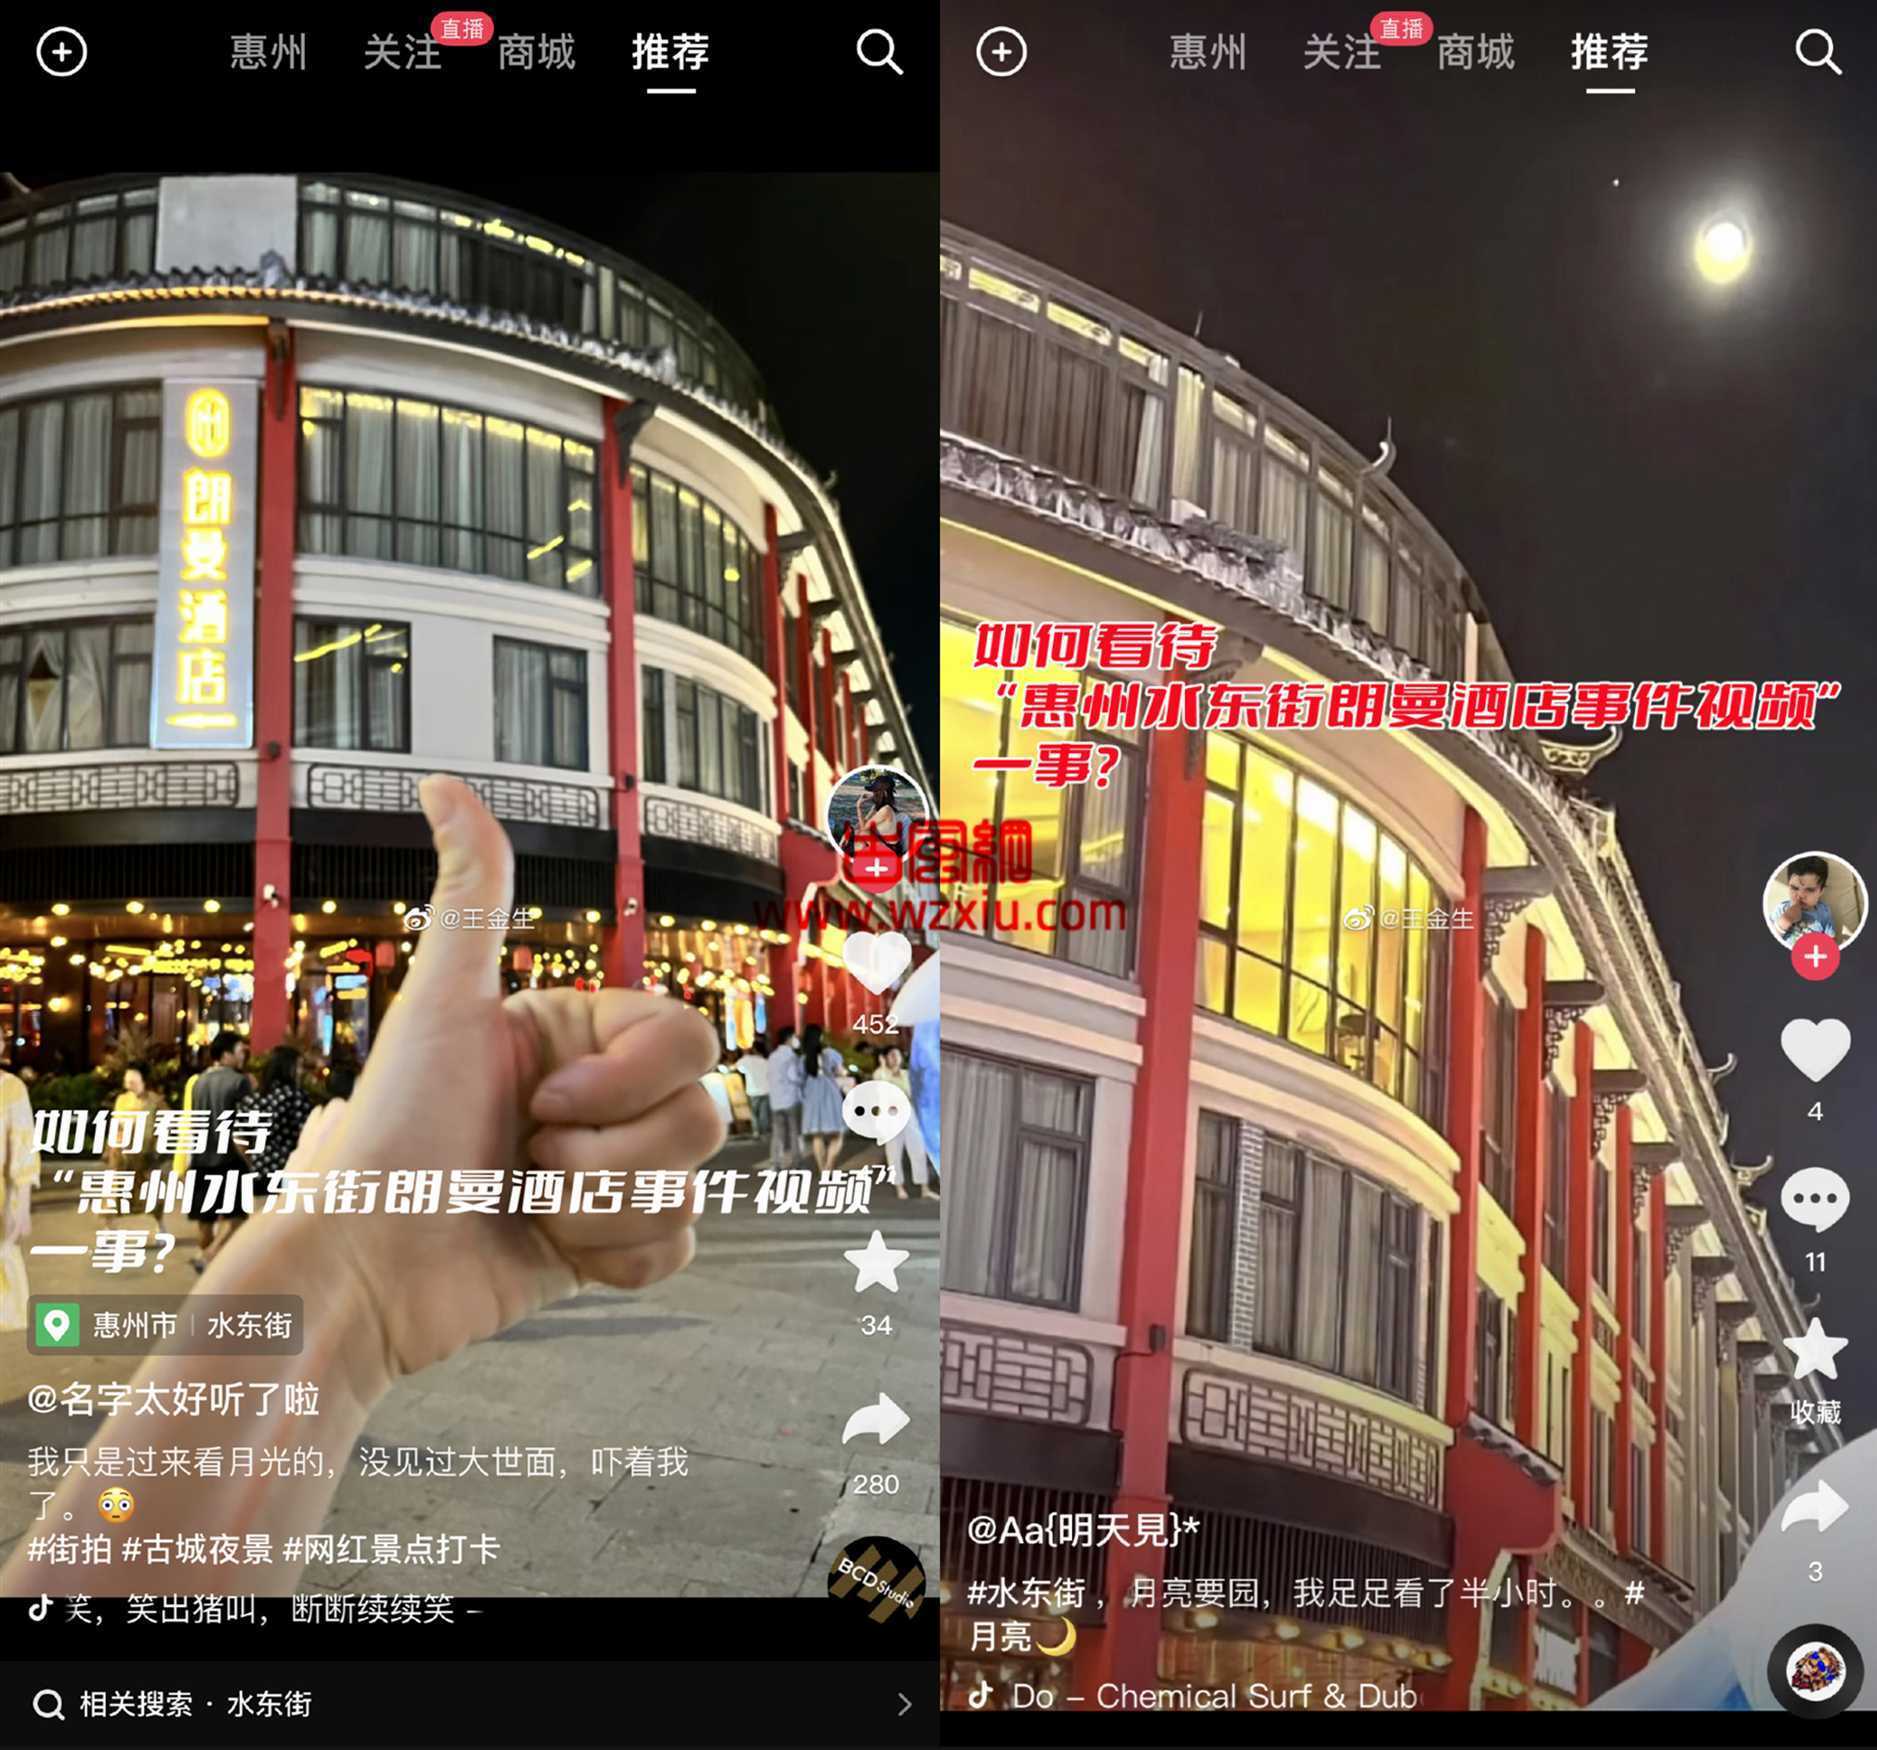 惠州水东街朗曼酒店事件的直播视频居然是酒店营销手段？